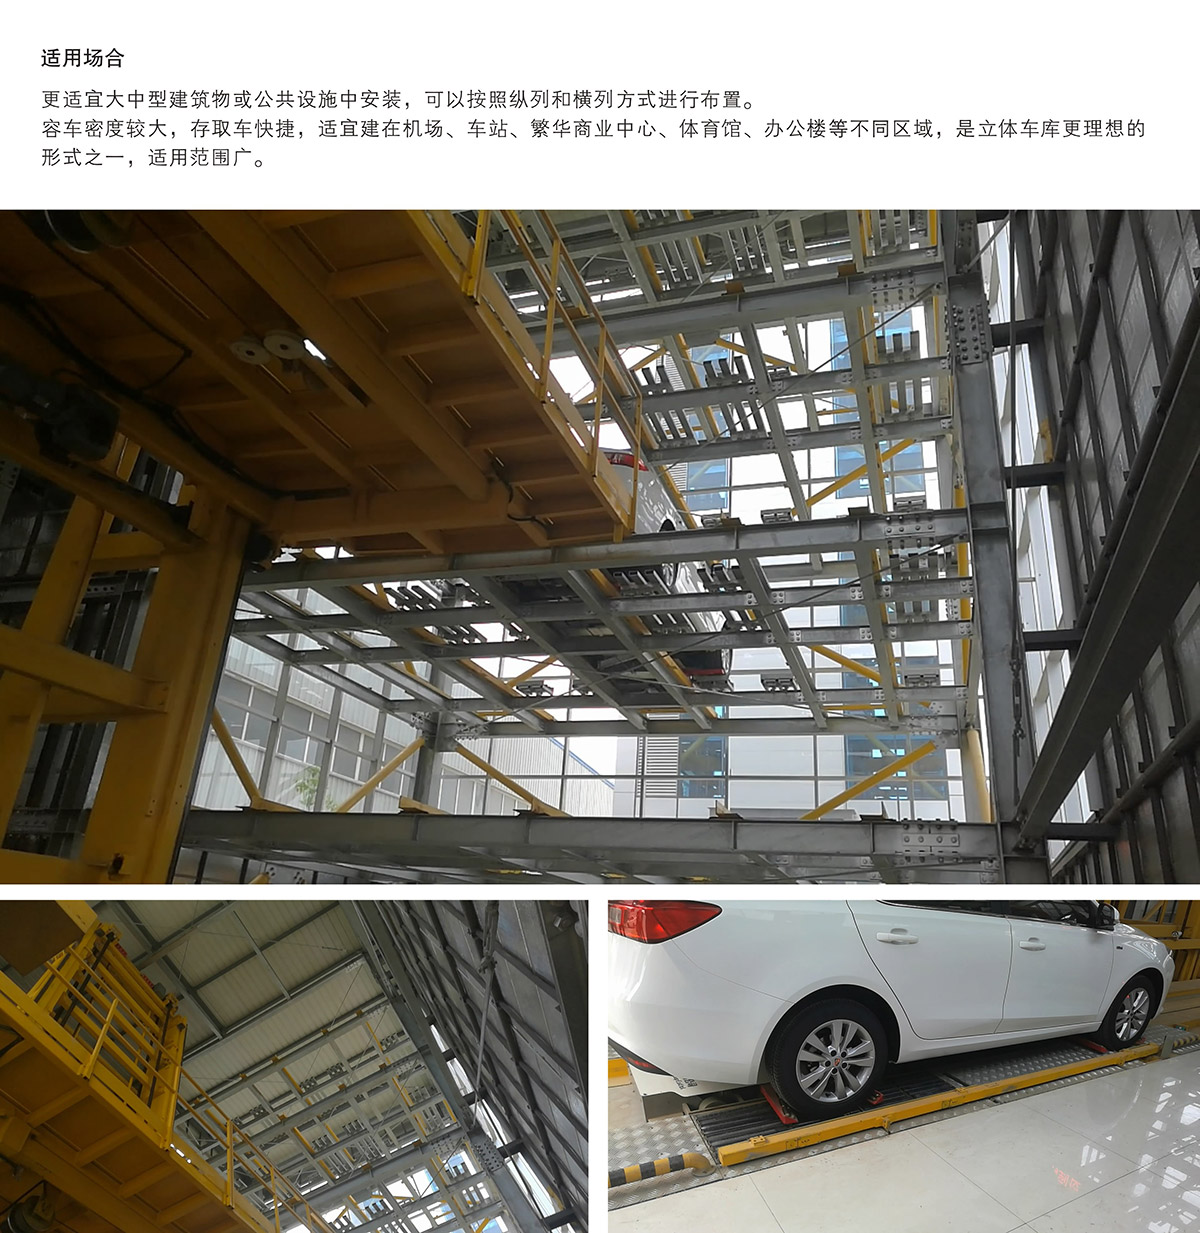 重庆PPY平面移动立体停车设备适用场合.jpg